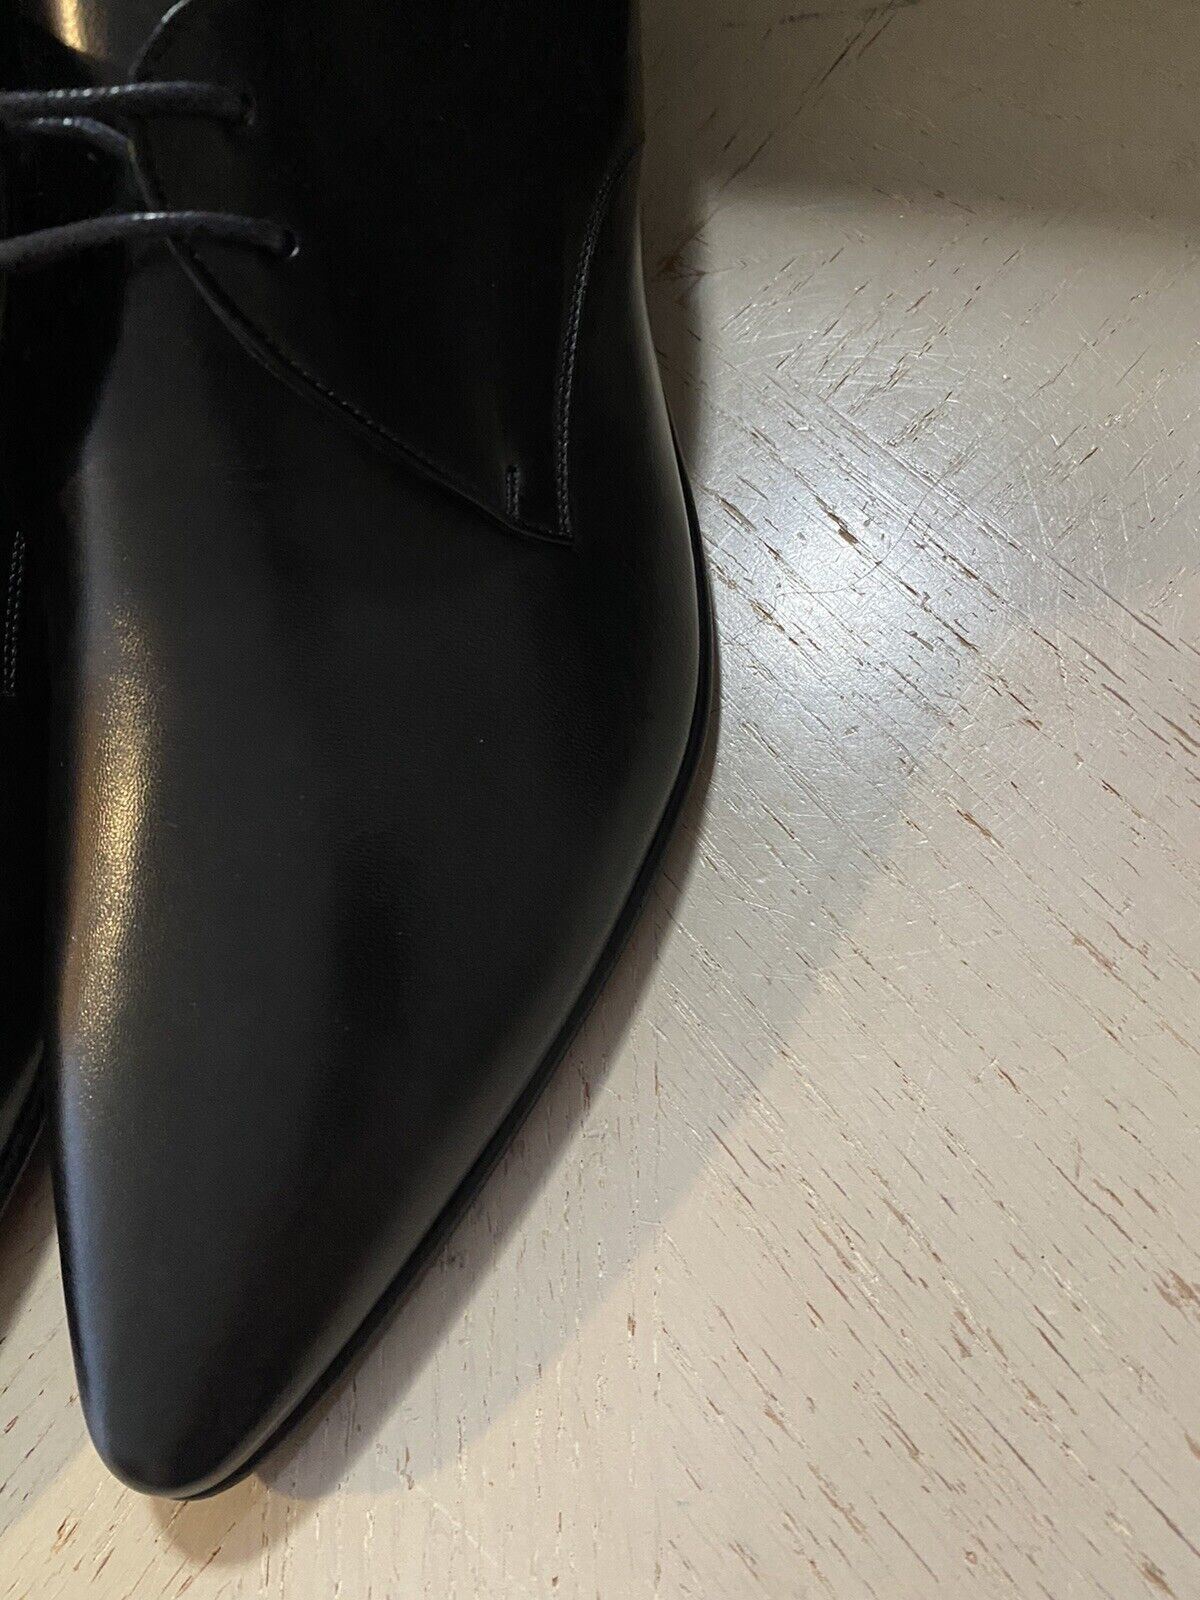 NIB $795 Saint Laurent Men’s Leather Dress Shoes Black 10 US /43 Eu Italy